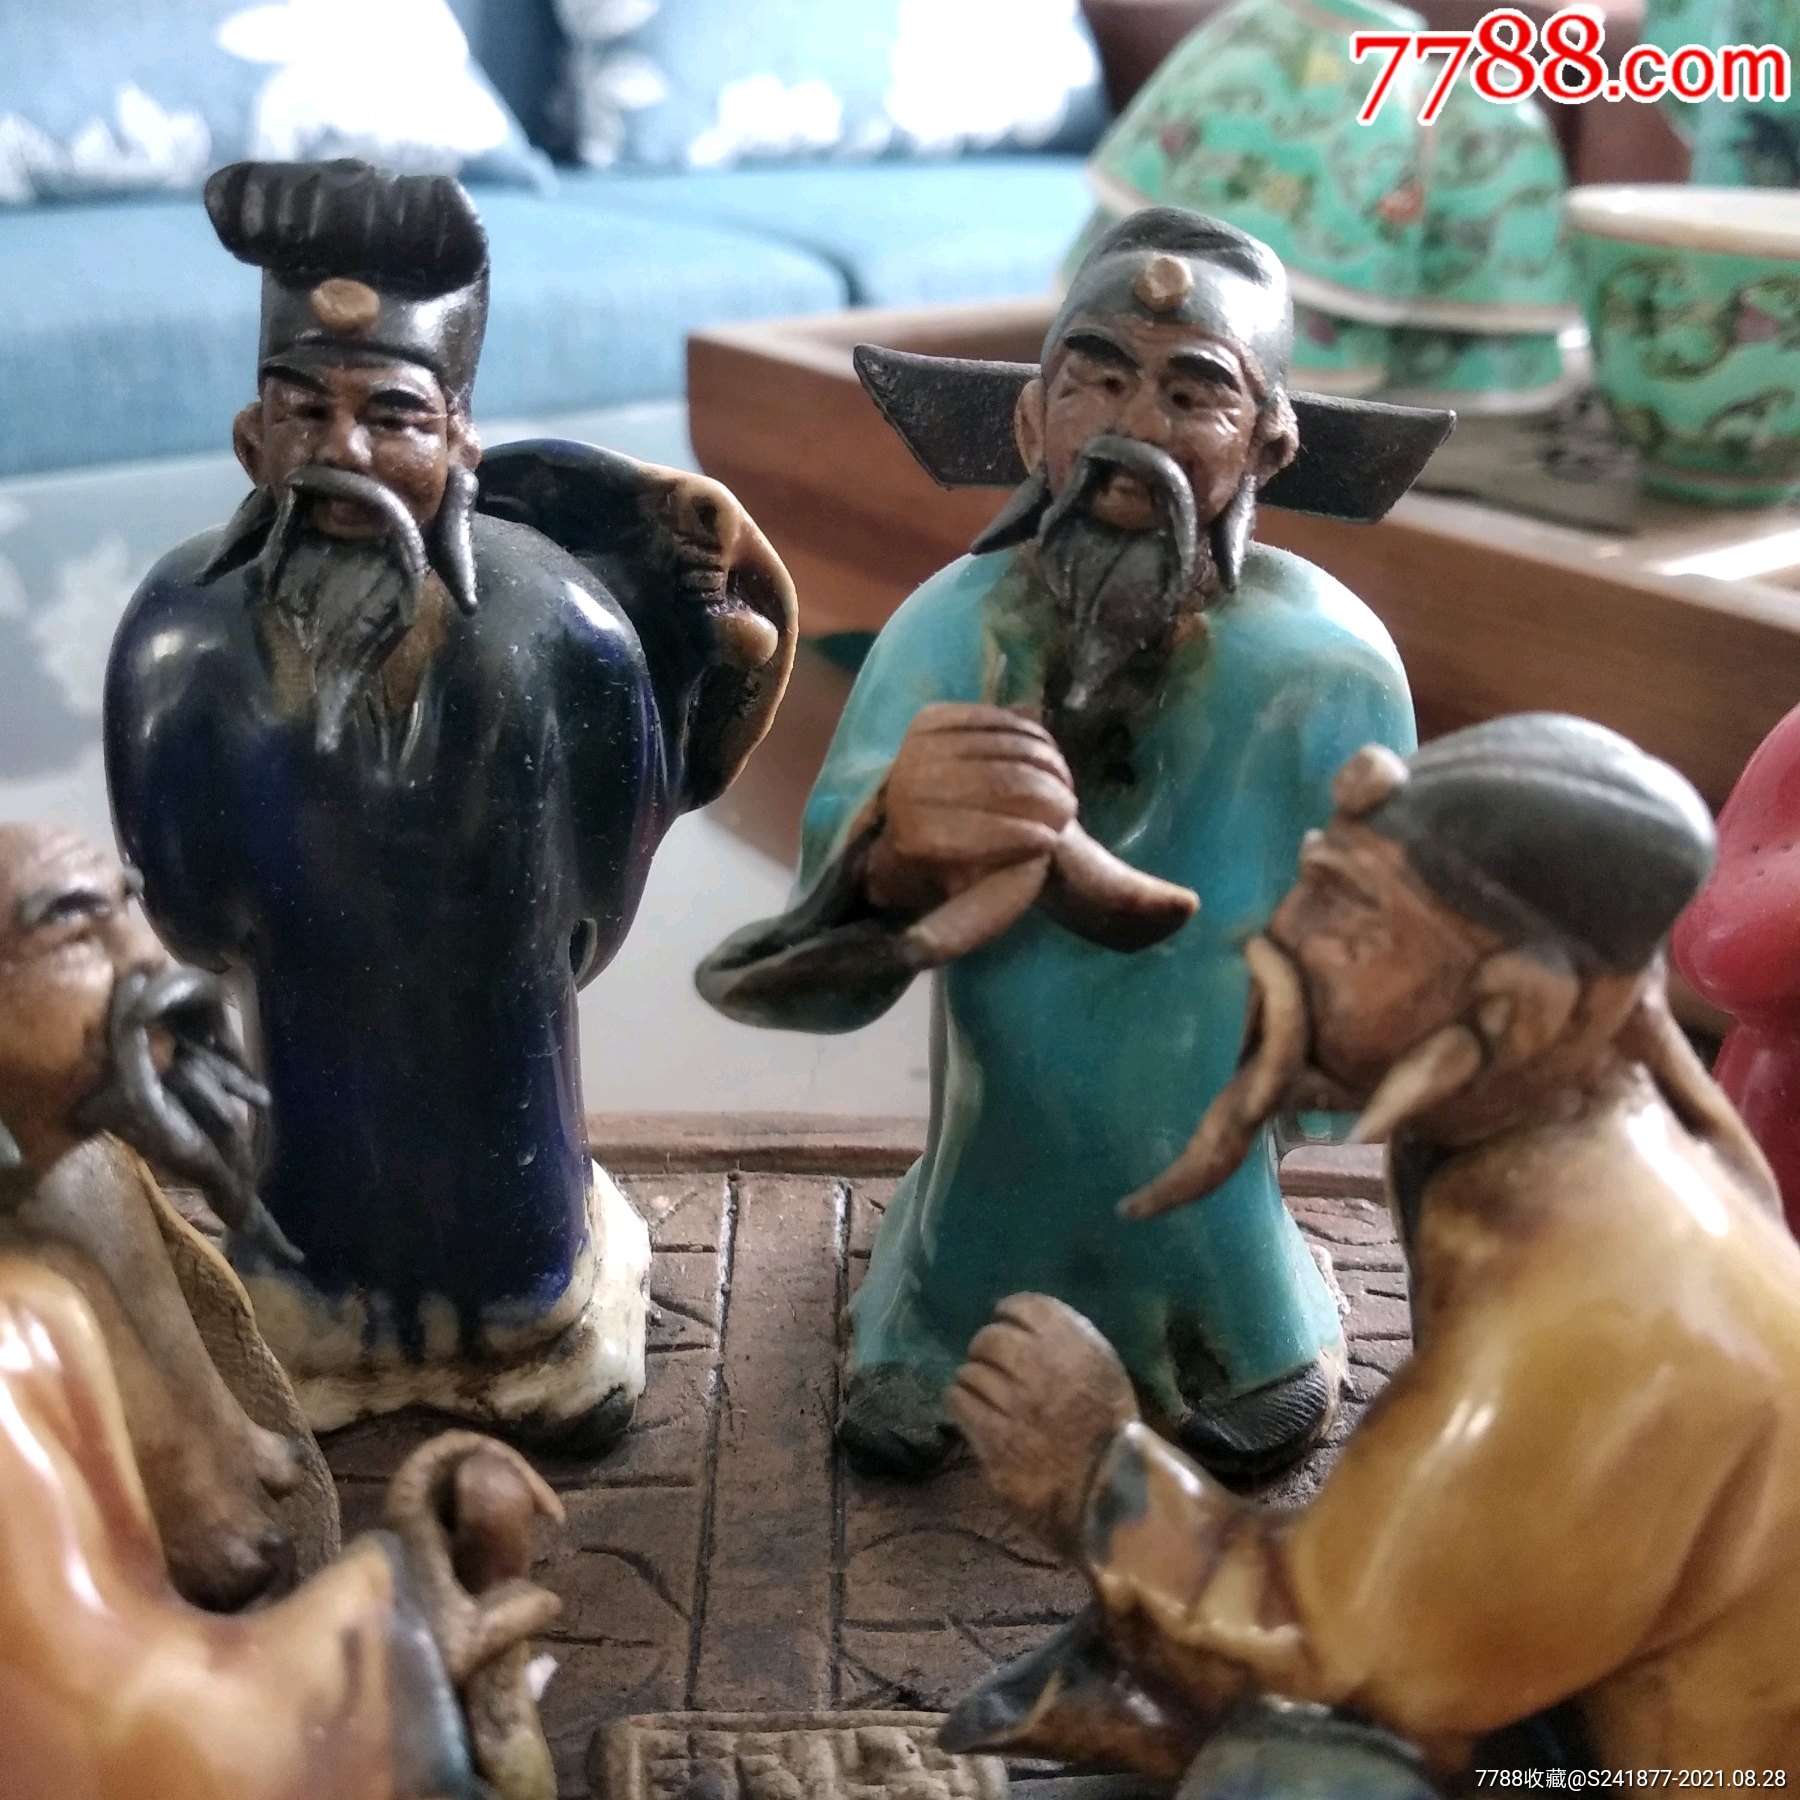 石湾陶瓷八仙人物图像图片